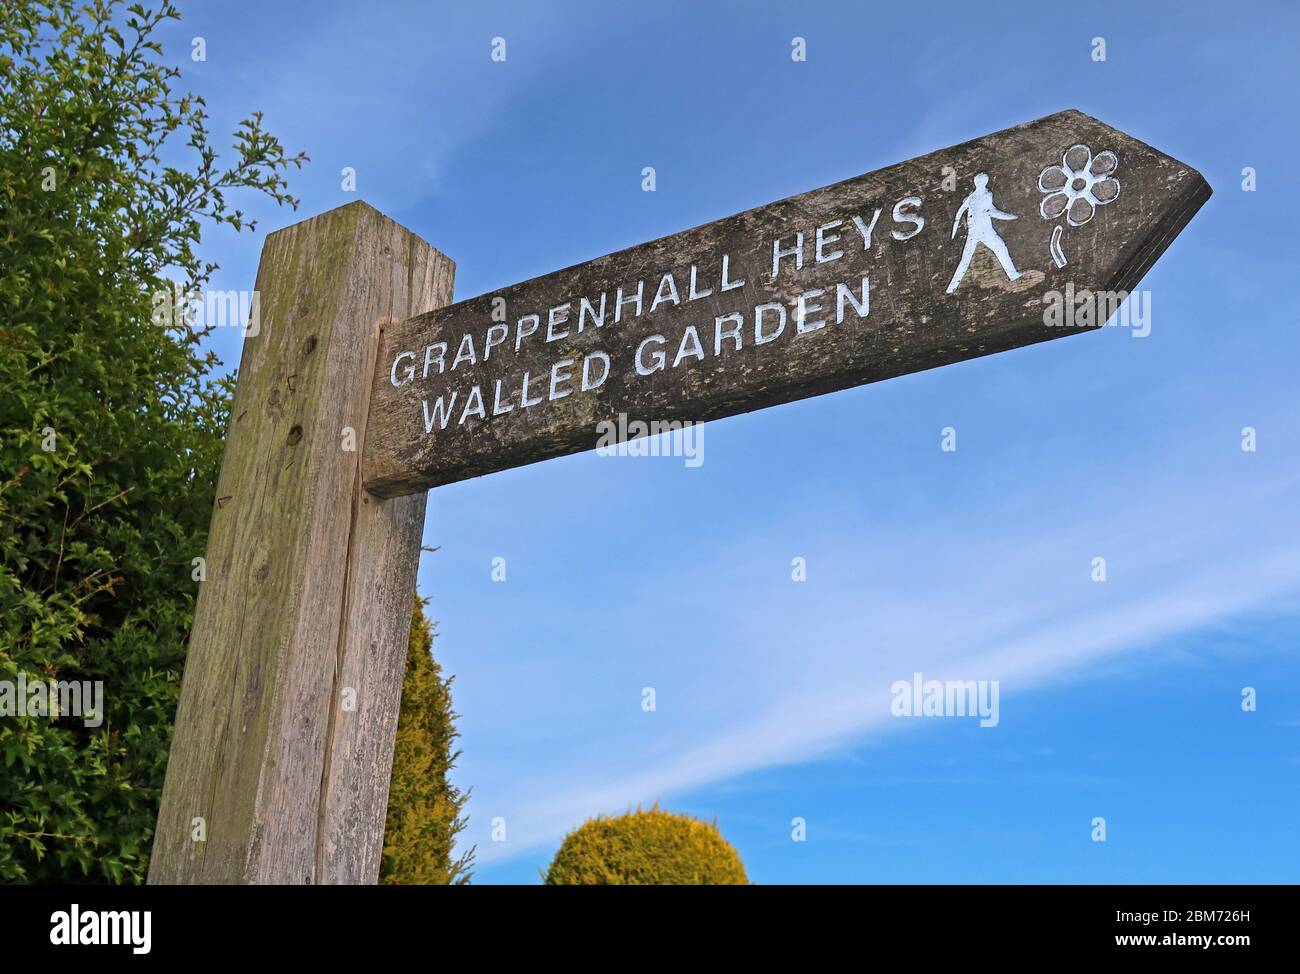 Grappenhall Heys panneau de jardin clos, Grappenhall Village, South Warrington, Cheshire, Angleterre, Royaume-Uni, panneau en bois, WA4 Banque D'Images